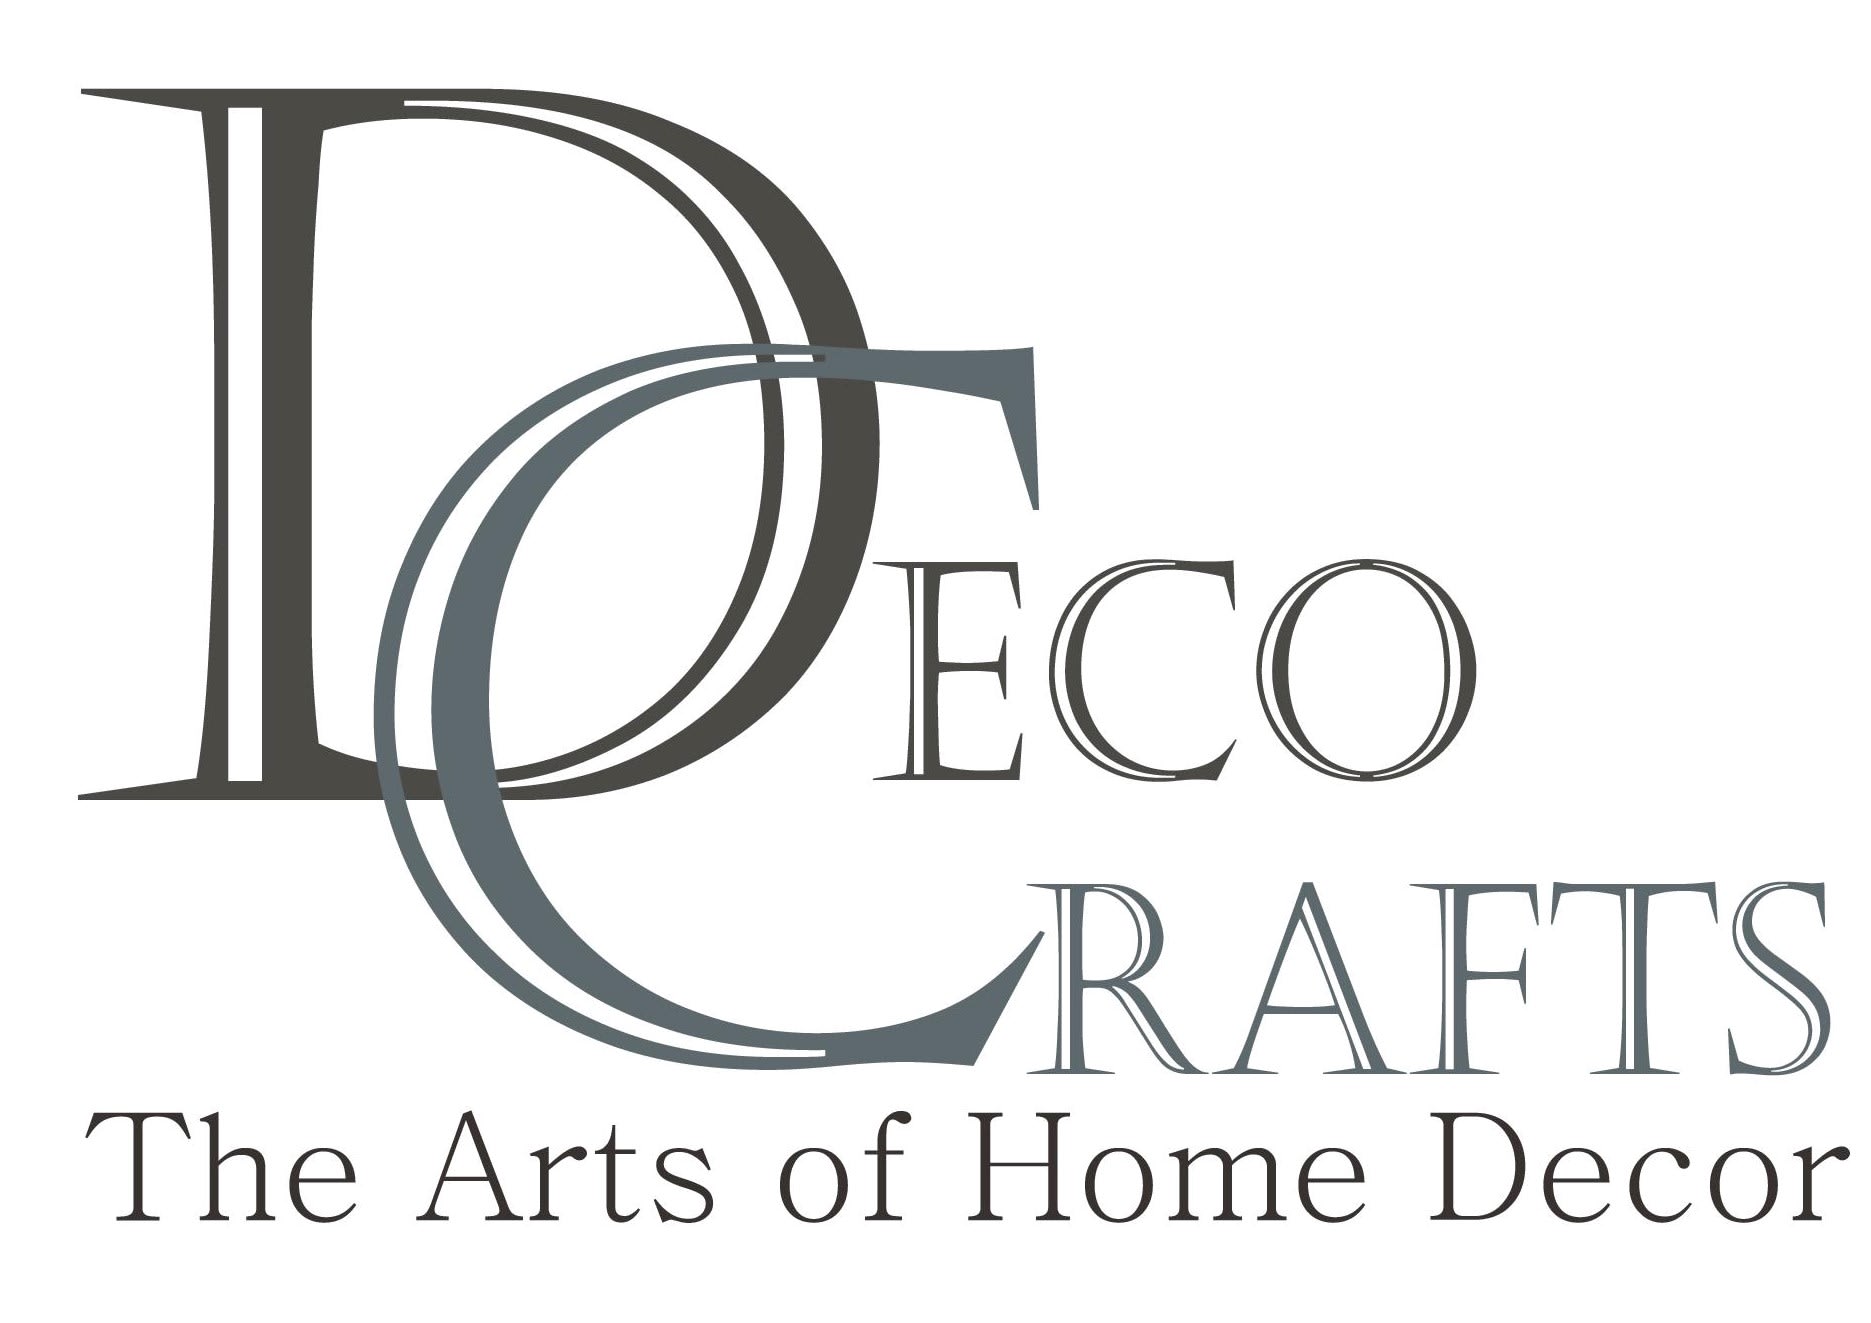 Deco Crafts